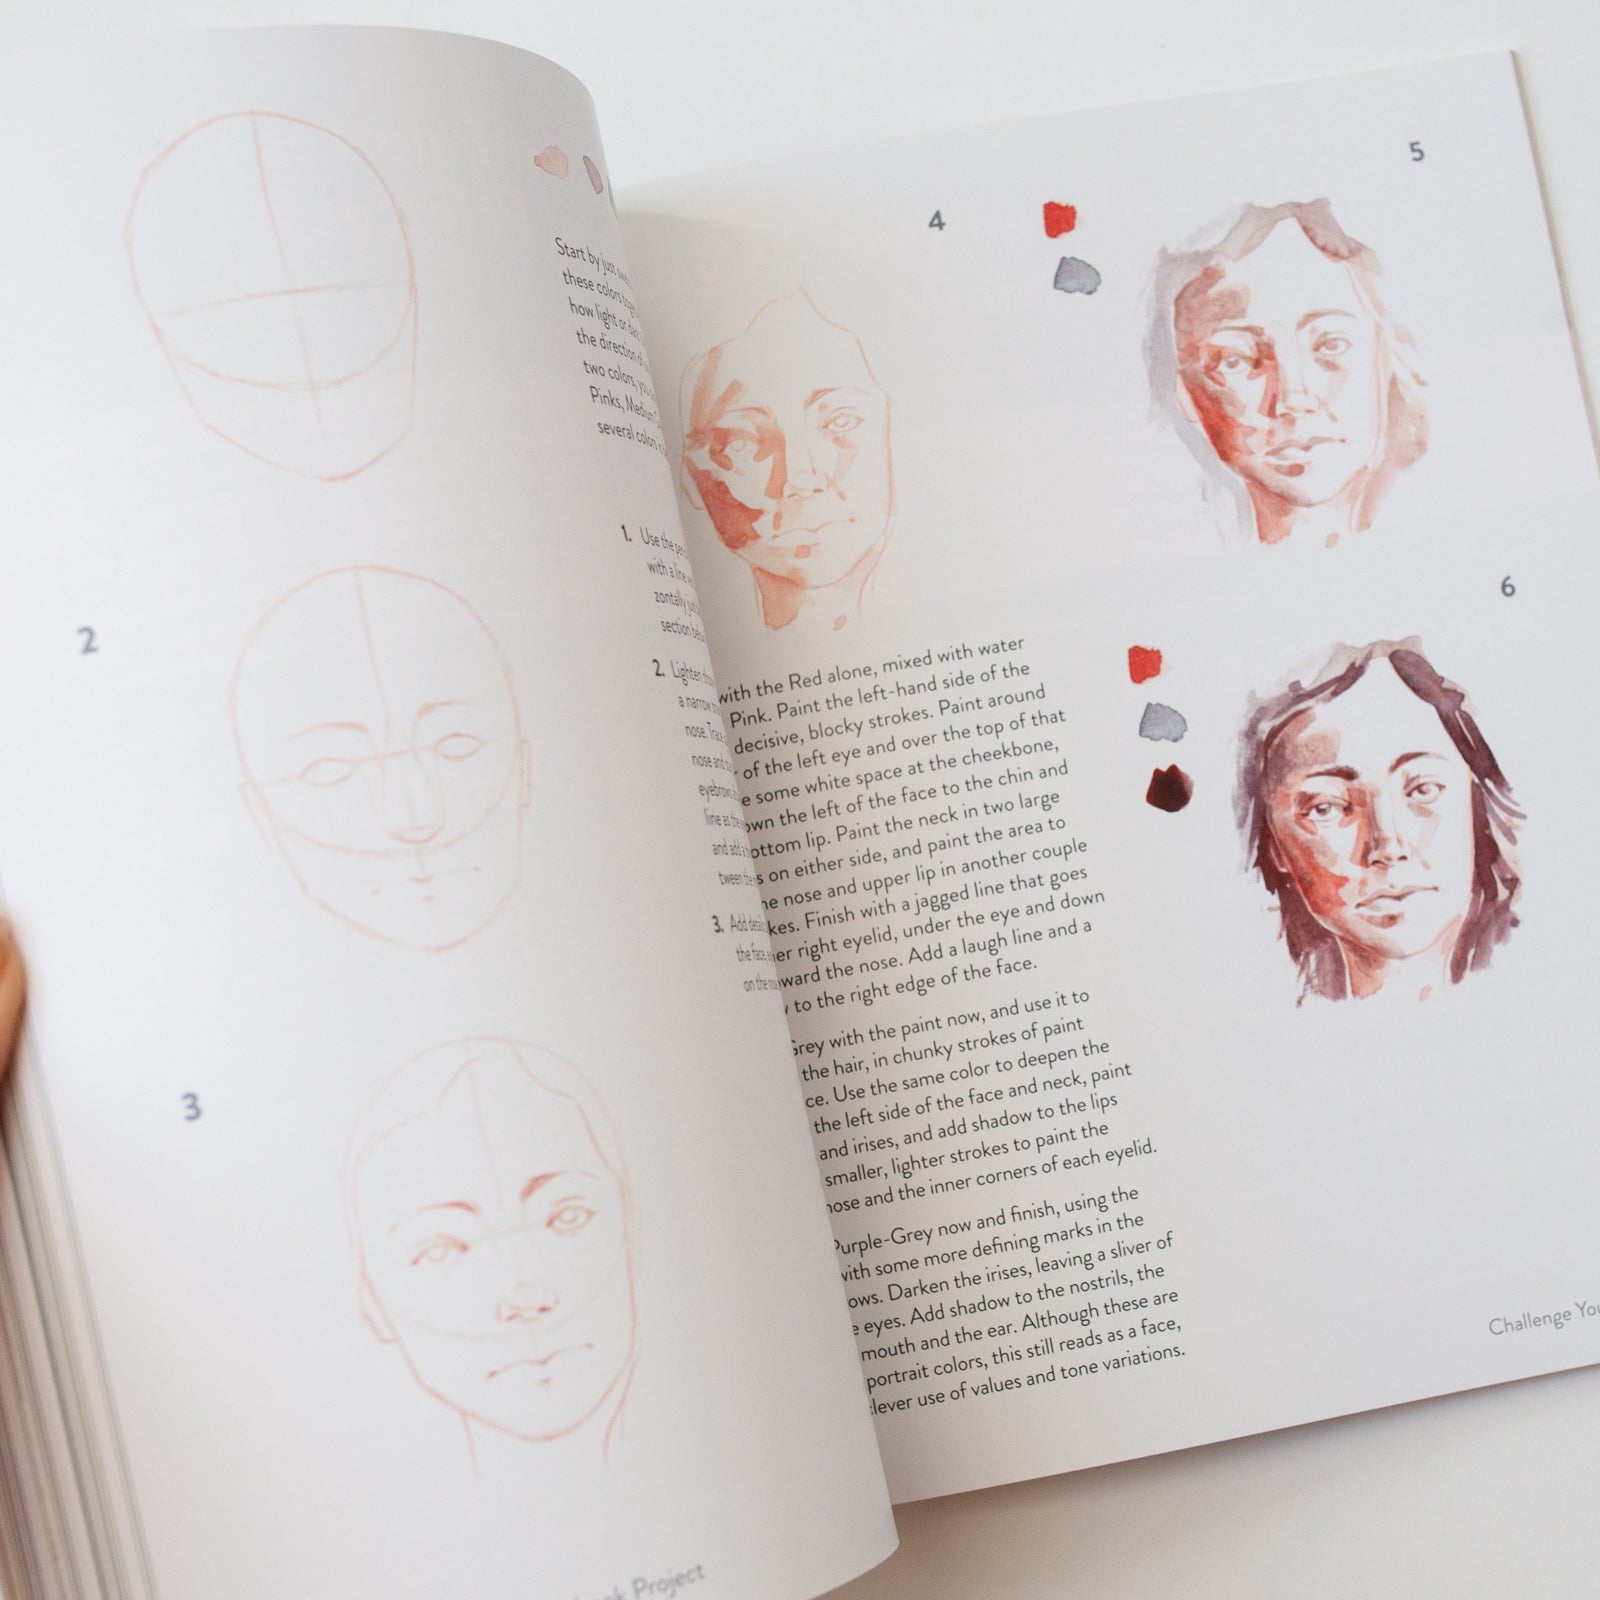 Das 30-Tage-Skizzenbuchprojekt von Minnie Small